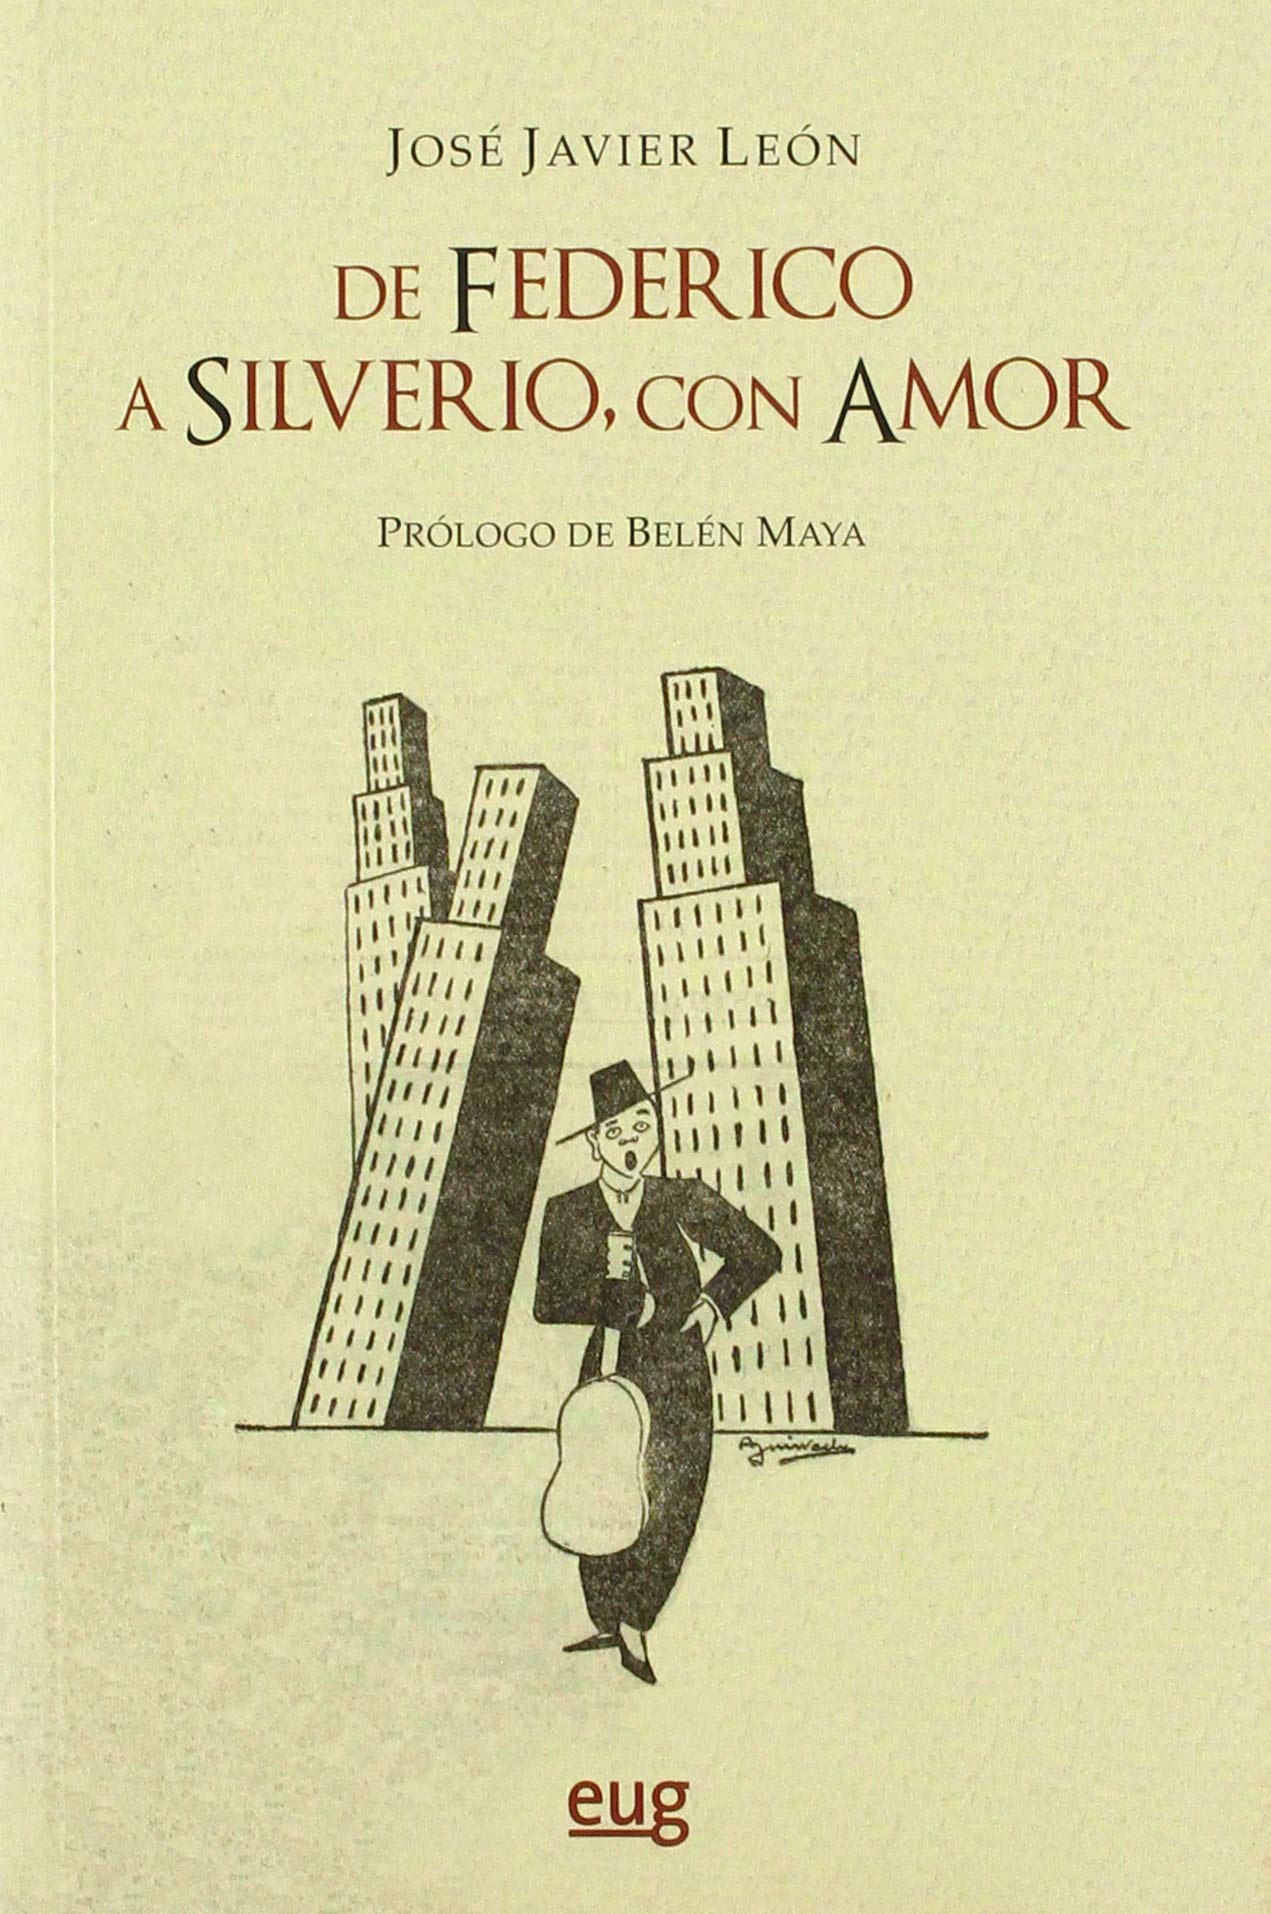 Portada del libro. Dibujo de cantaor flamenco y al fondo tres rascacielos